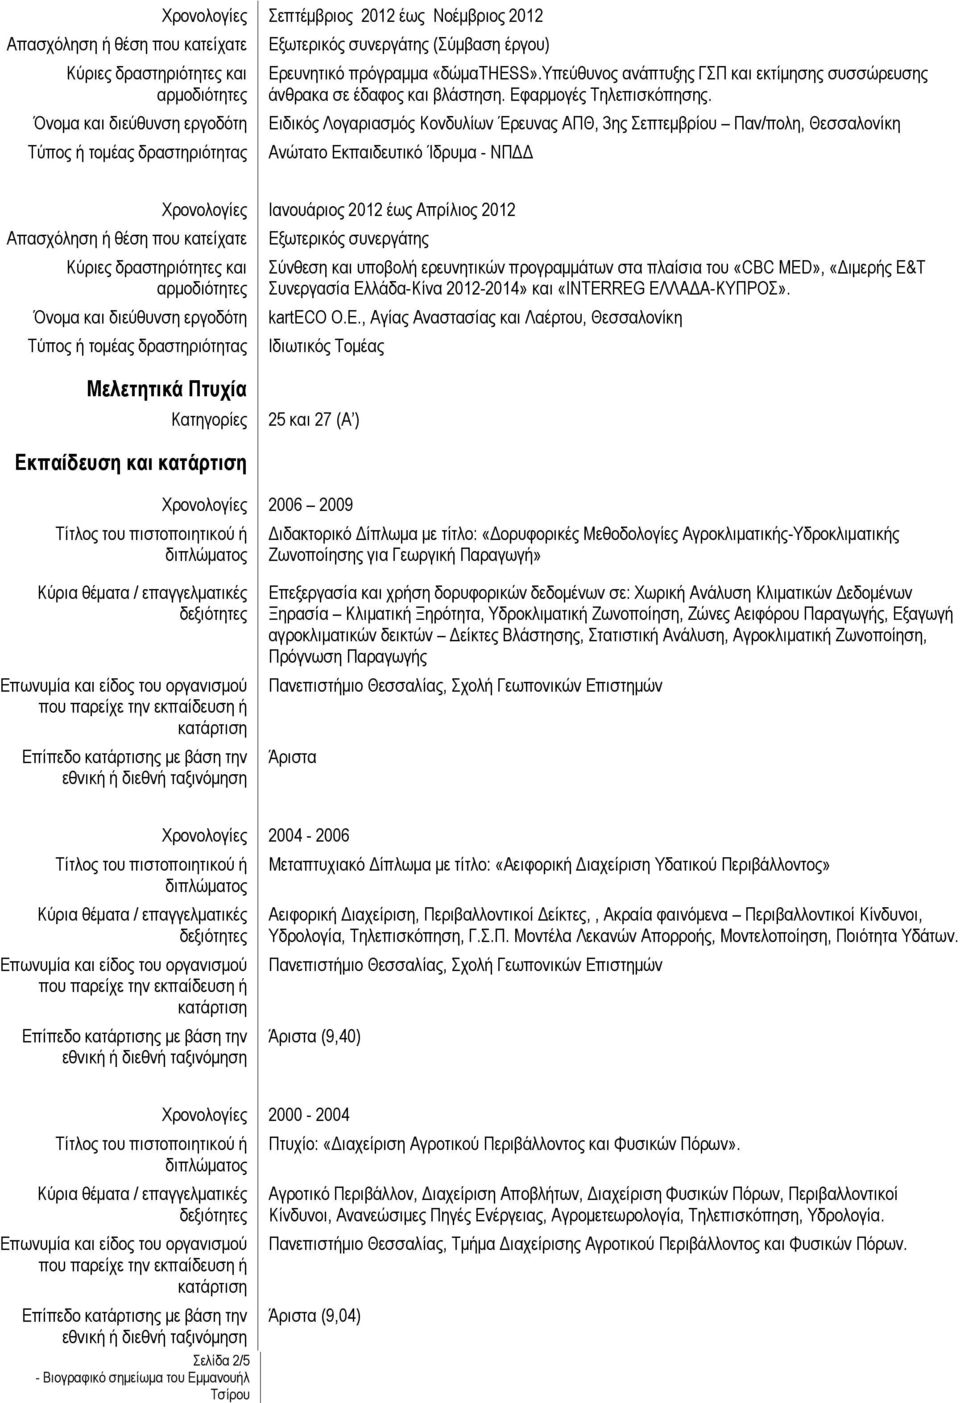 Ειδικός Λογαριασμός Κονδυλίων Έρευνας ΑΠΘ, 3ης Σεπτεμβρίου Παν/πολη, Θεσσαλονίκη Ανώτατο Εκπαιδευτικό Ίδρυμα - ΝΠΔΔ Ιανουάριος 2012 έως Απρίλιος 2012 Εξωτερικός συνεργάτης Σύνθεση και υποβολή